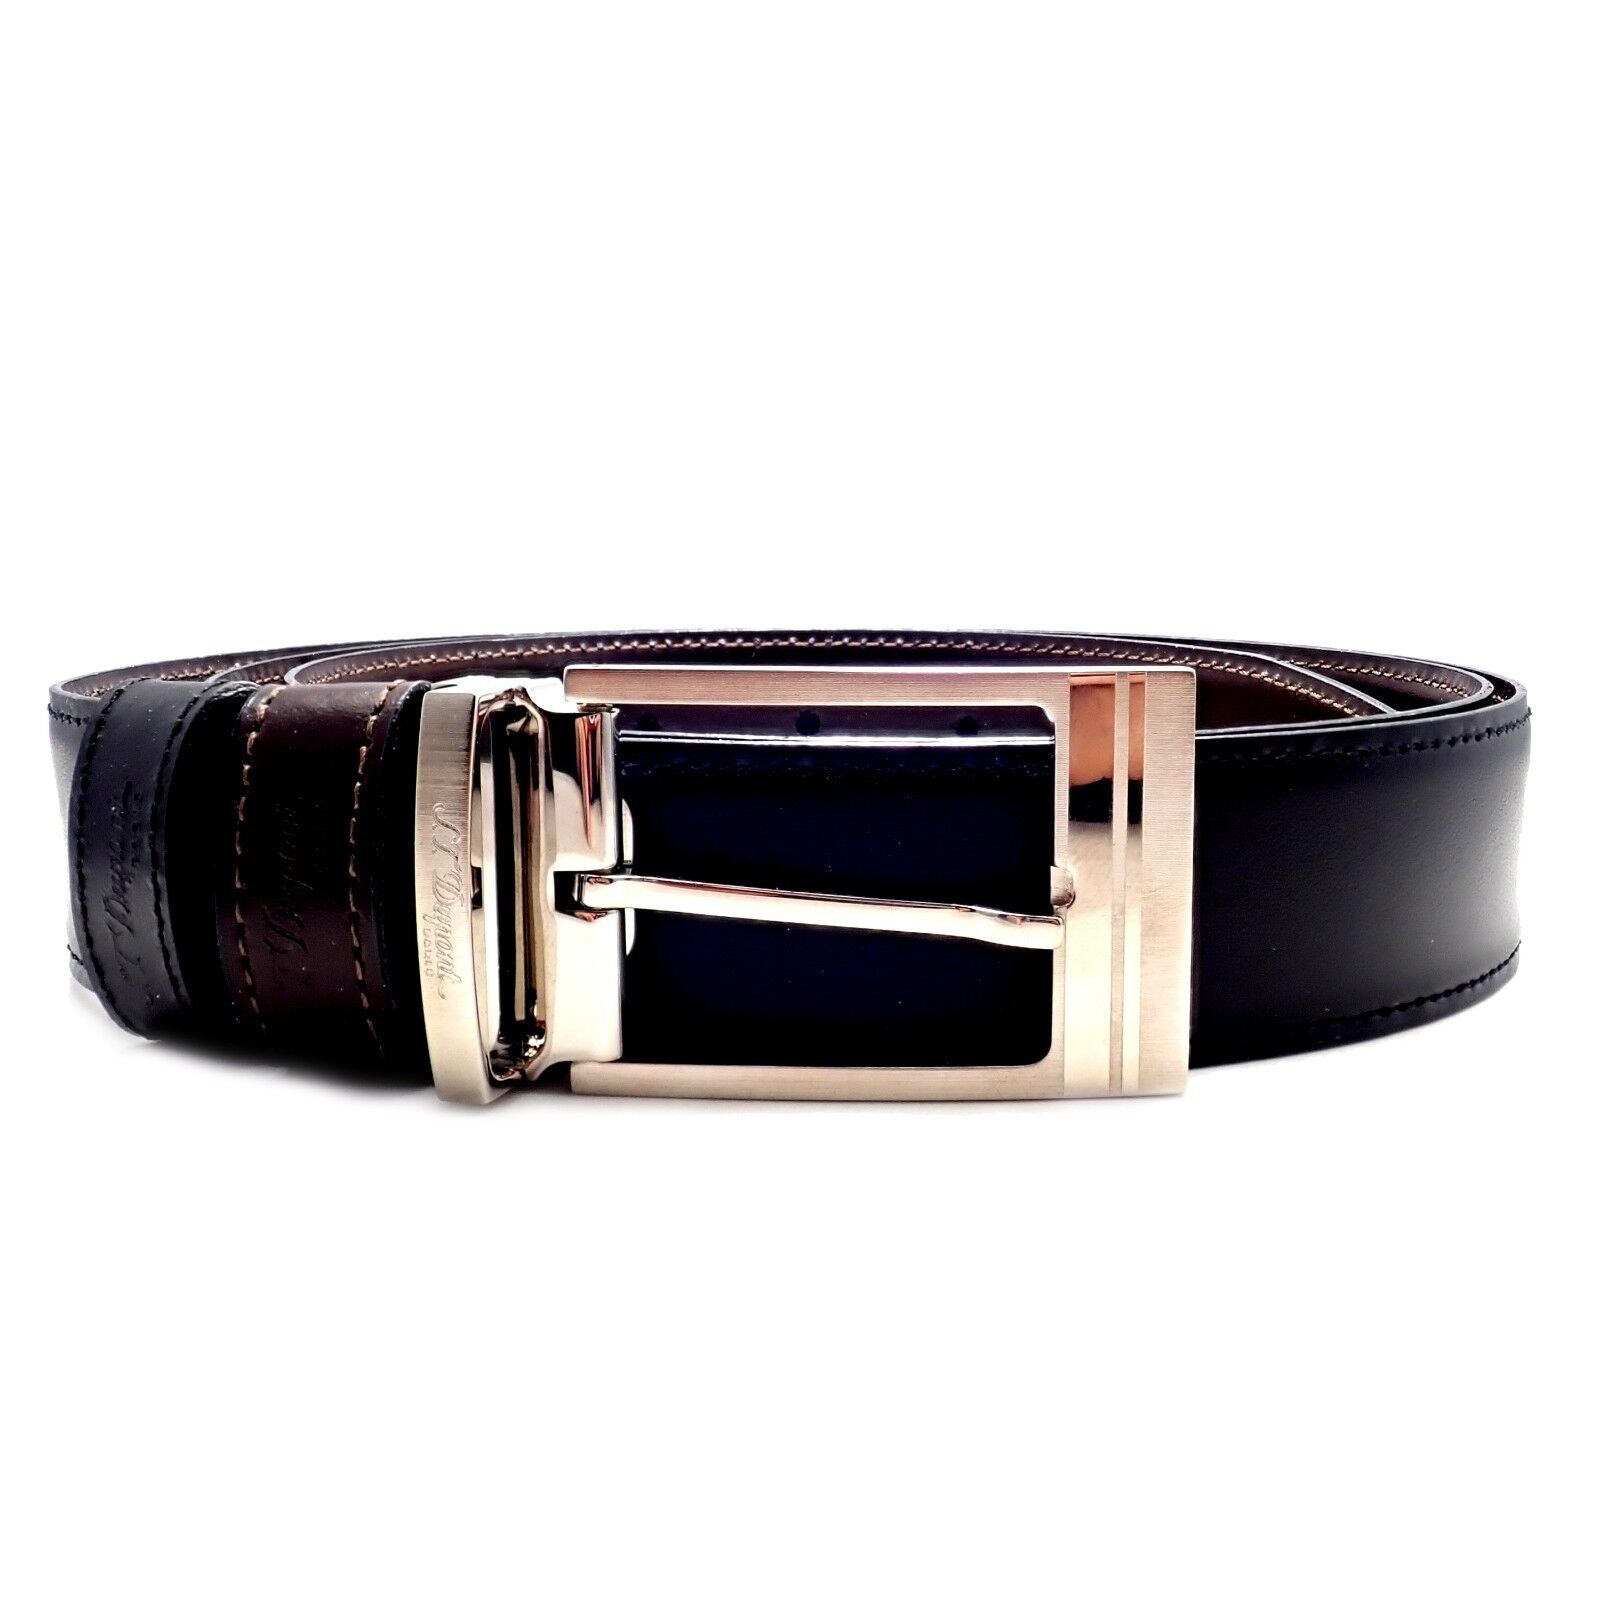 Article de Voyage Black Leather Belt